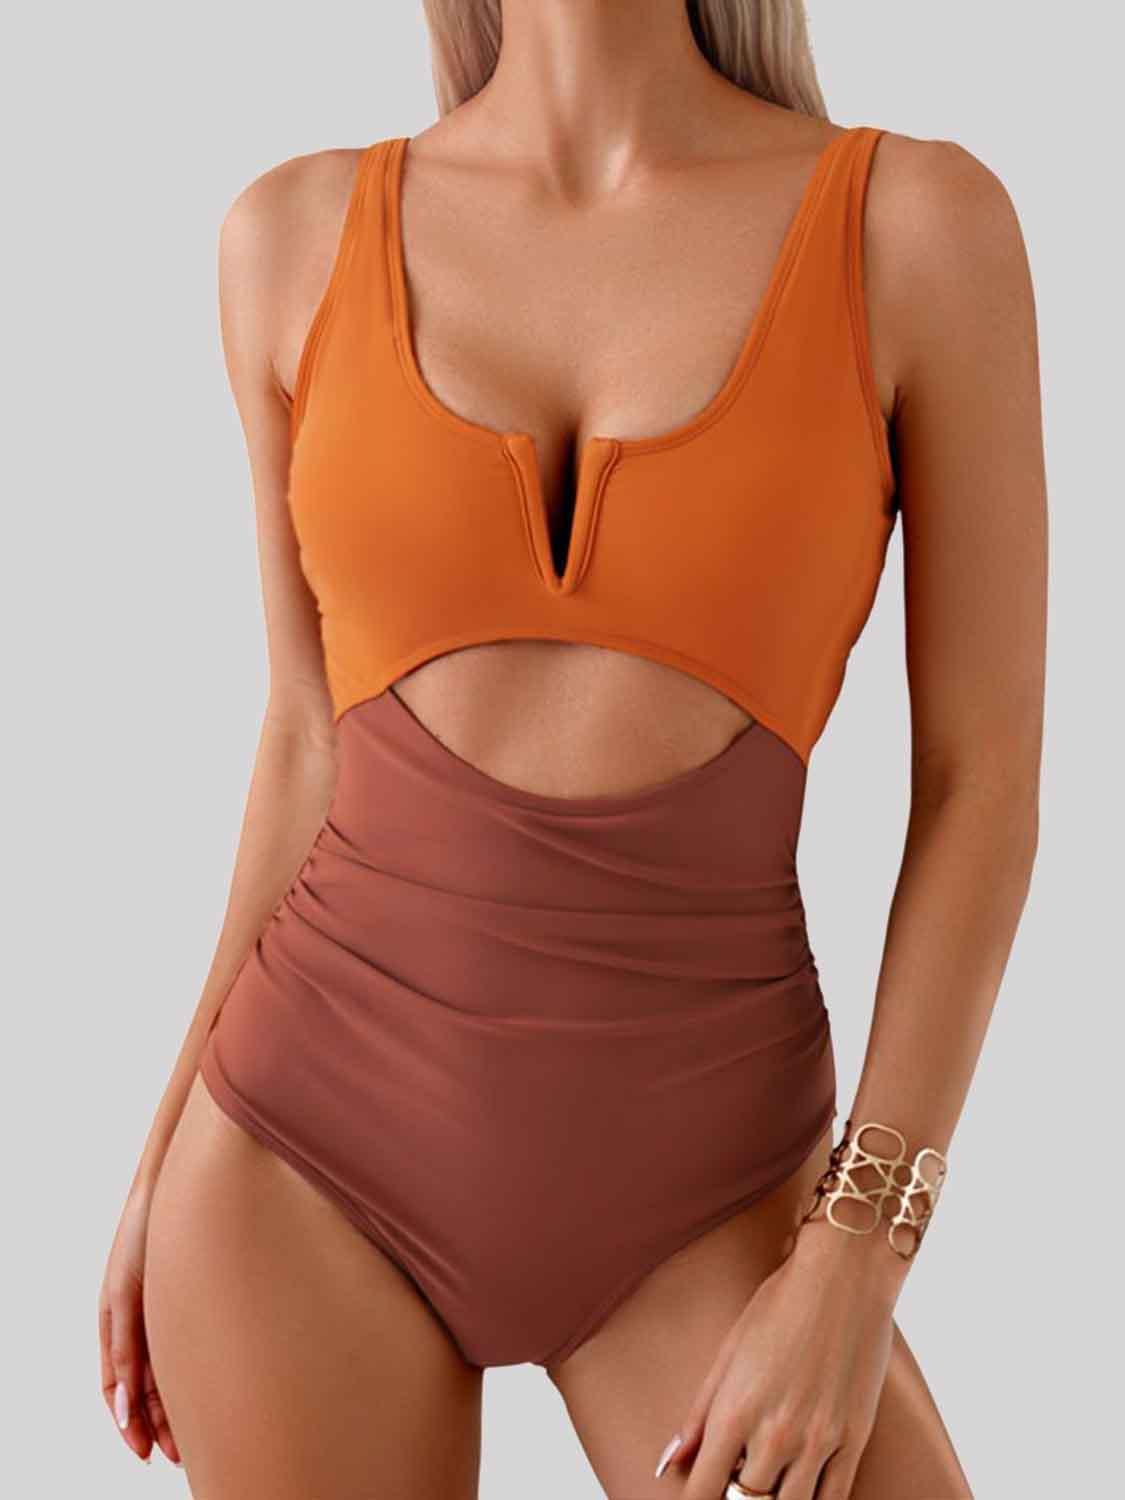 Bona Fide Fashion - Tied Cutout Contrast One-Piece Swimwear - Women Fashion - Bona Fide Fashion